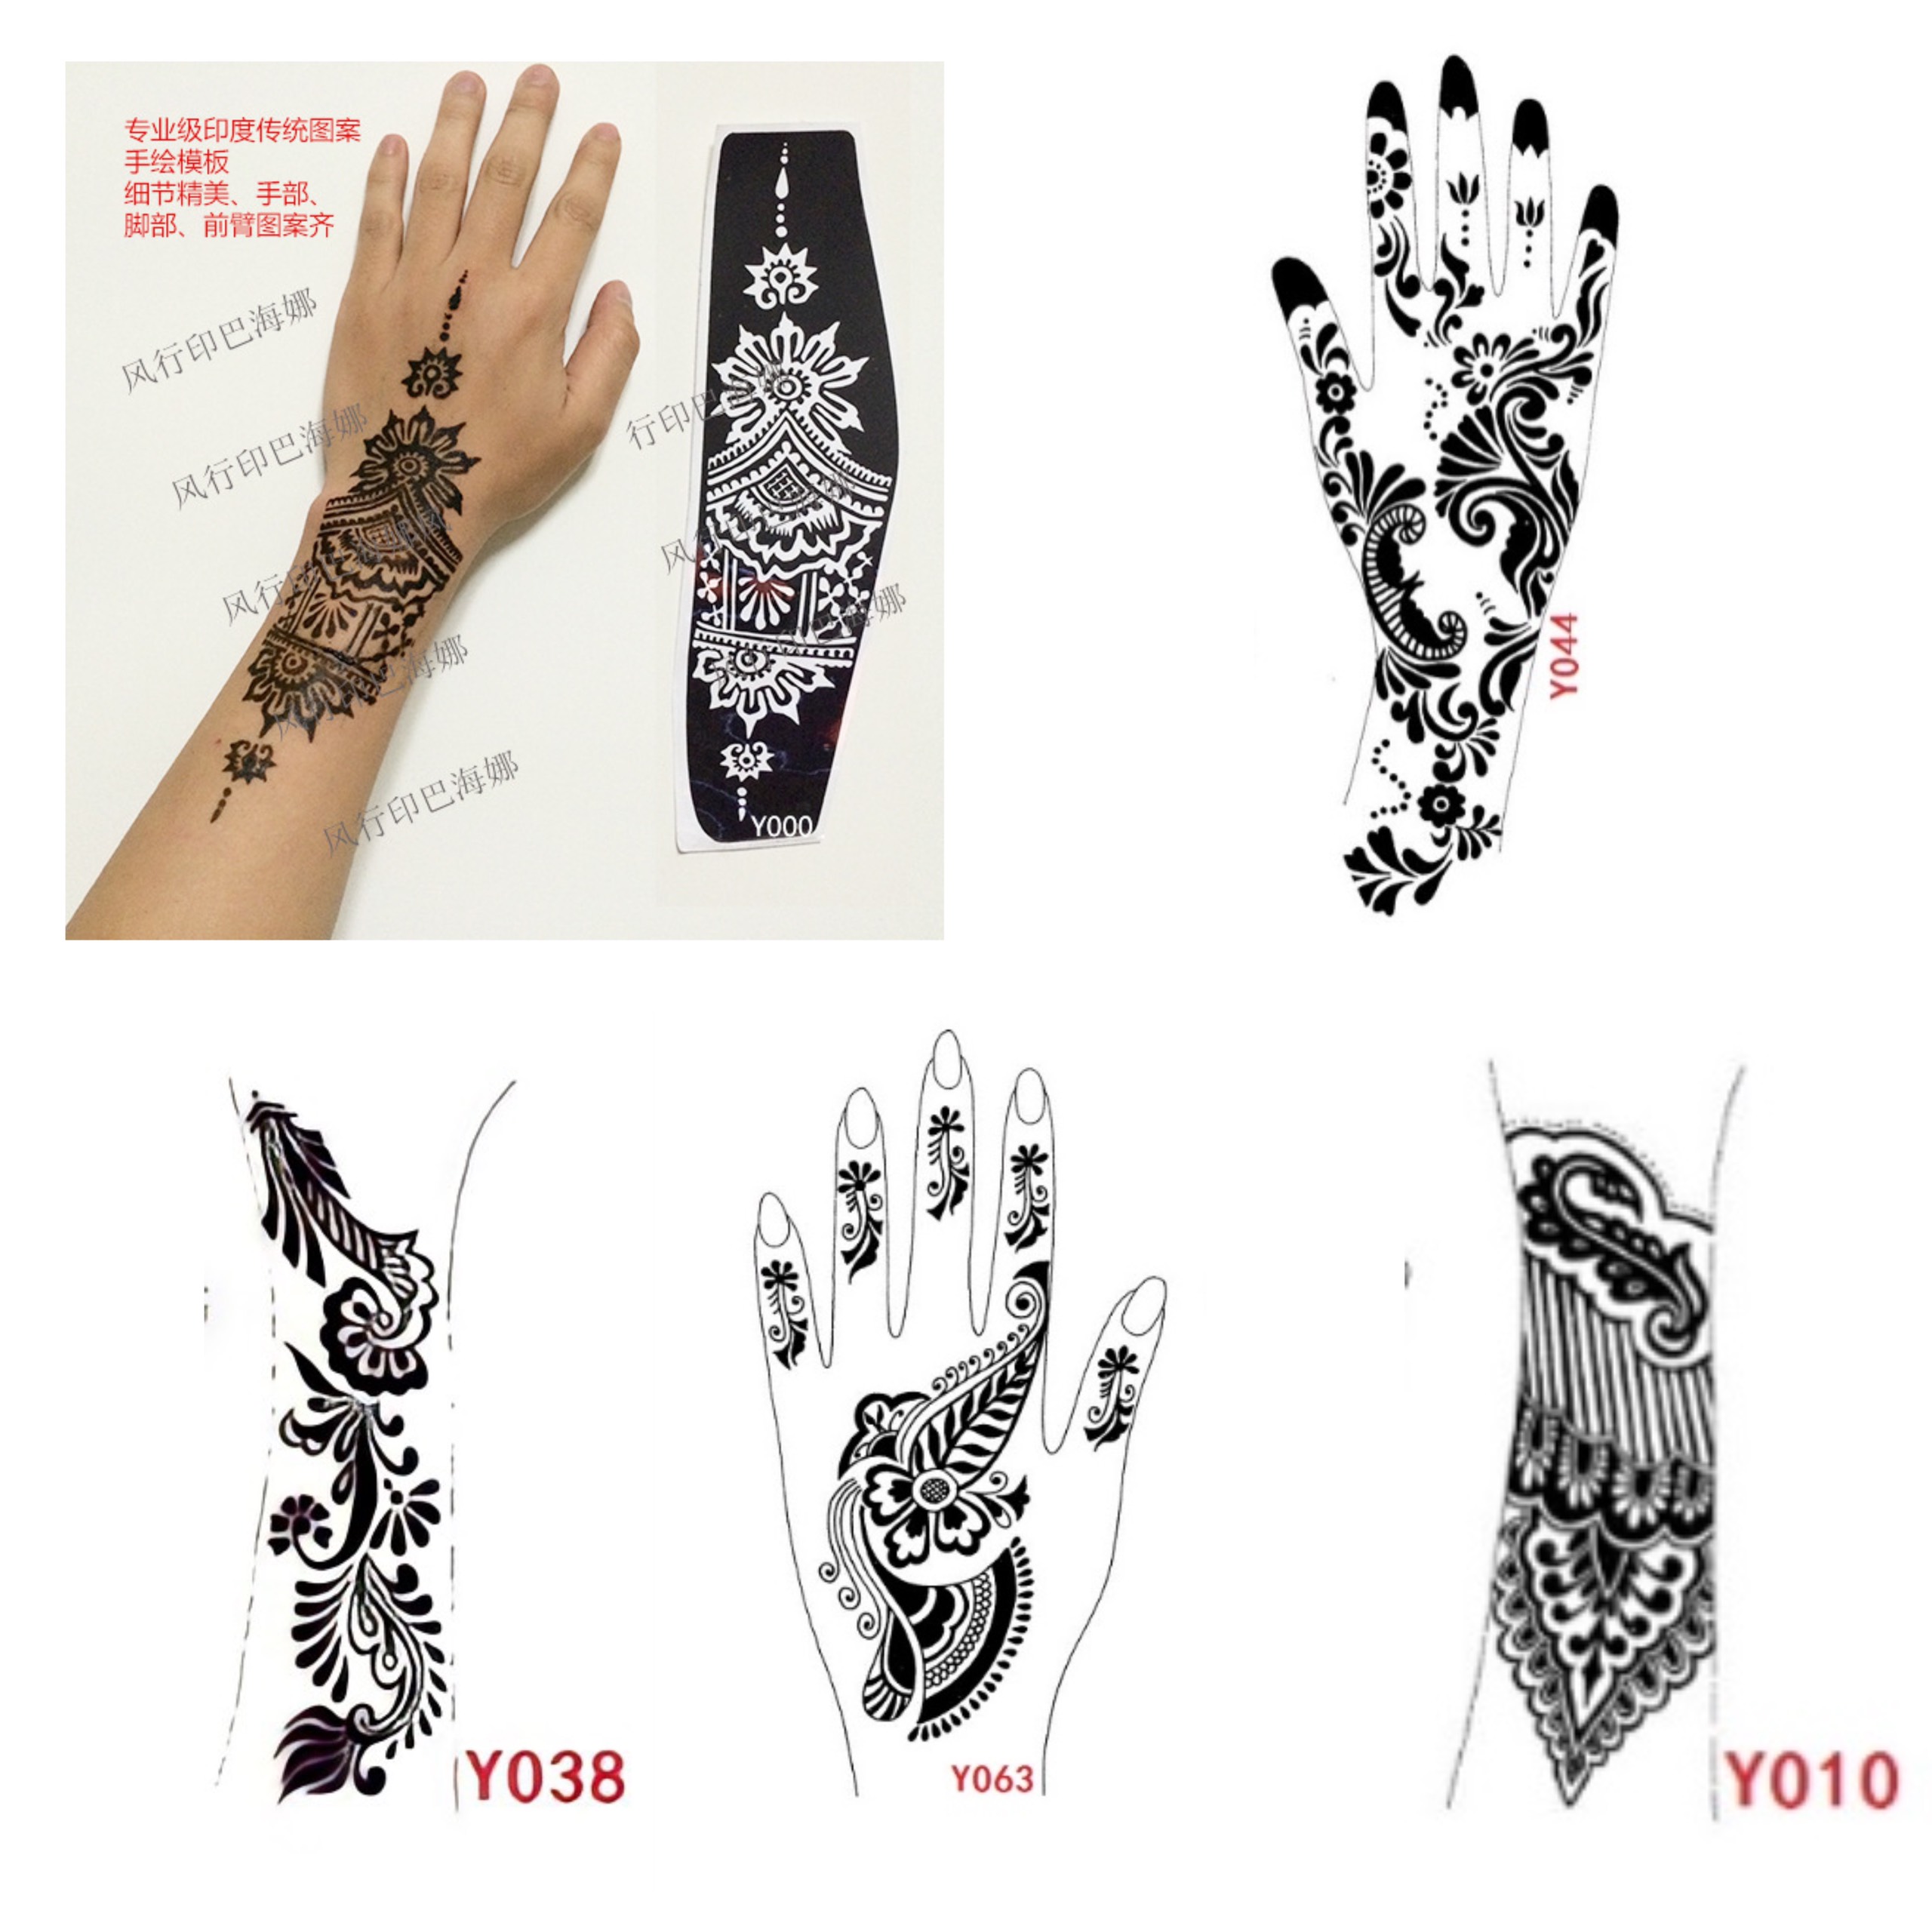 Hãy khám phá sự tinh tế và truyền thống trong nghệ thuật xăm tay henna mehndi. Với sự pha trộn của hình họa và ký tự, nghệ thuật này thực sự độc đáo và ấn tượng. Bạn sẽ bị thu hút bởi màu sắc và huyền bí cùng với tình cảm tri ân đối với các truyền thống xăm hình.